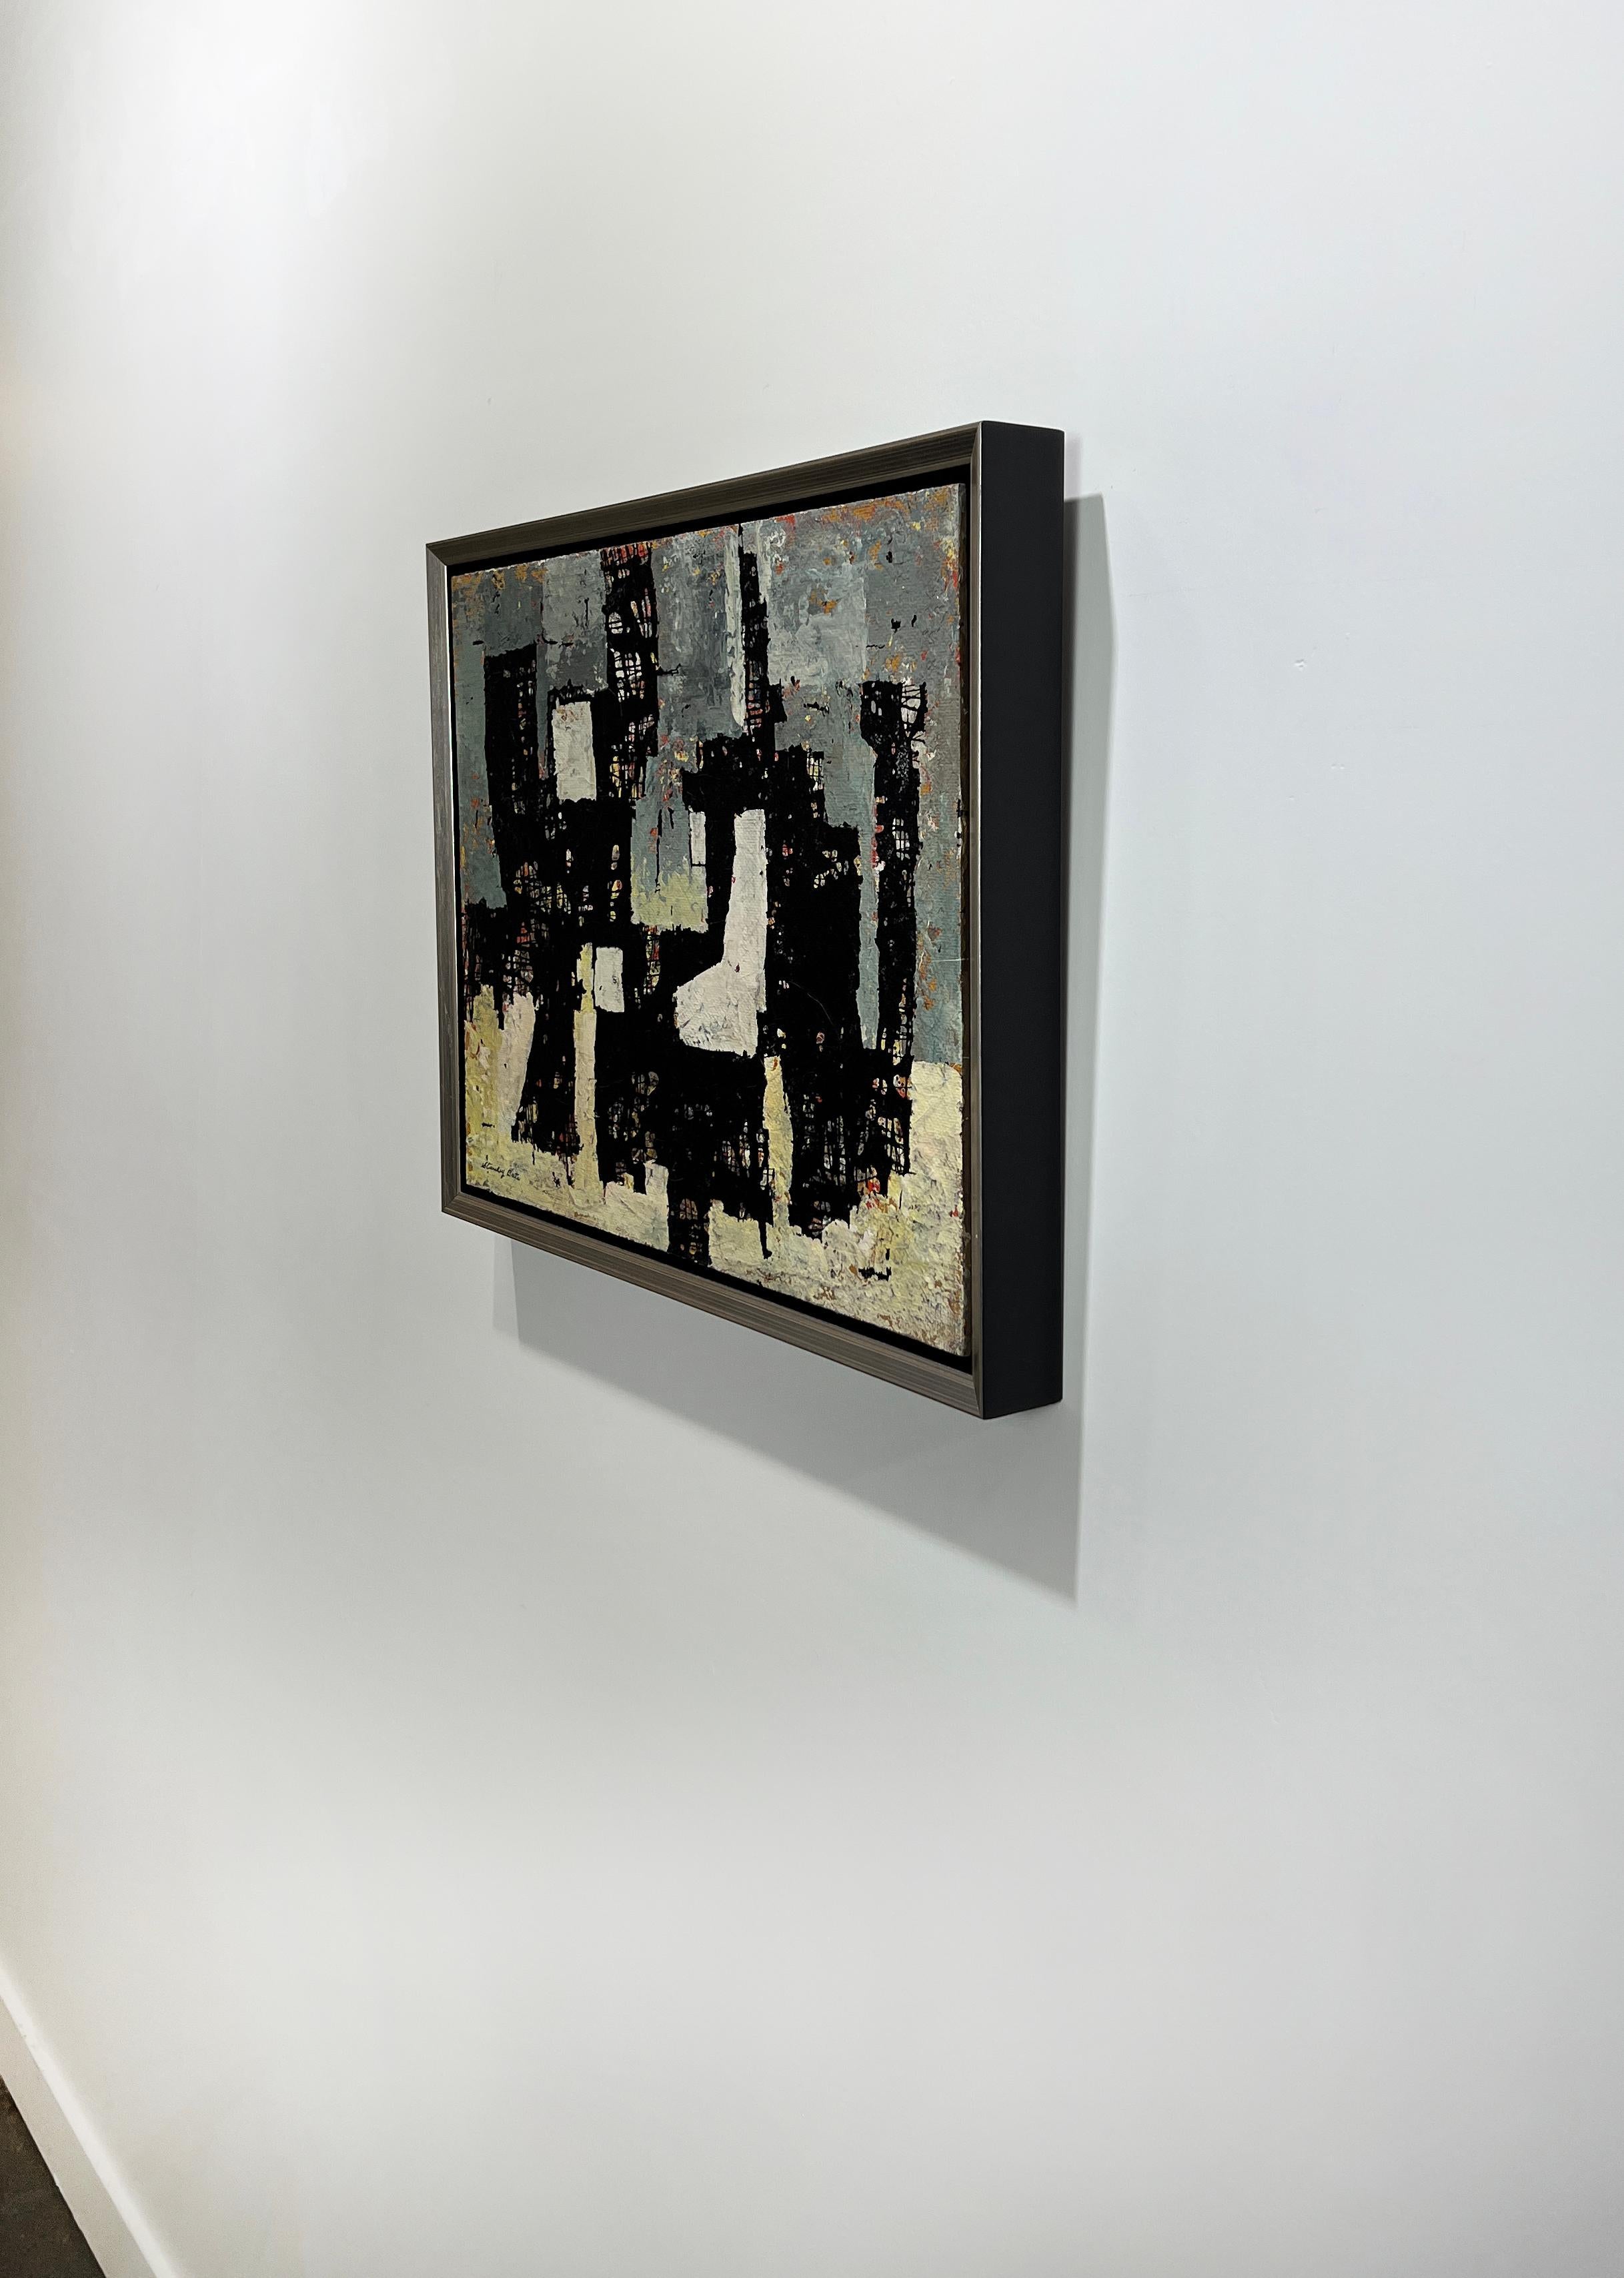 Cette peinture moderne d'expressionnisme abstrait de Stanley Bate est réalisée avec de la peinture à l'huile et de la laque sur panneau. Elle présente des textures légères et une palette de bleu-gris et de jaune contrastée par le point focal presque